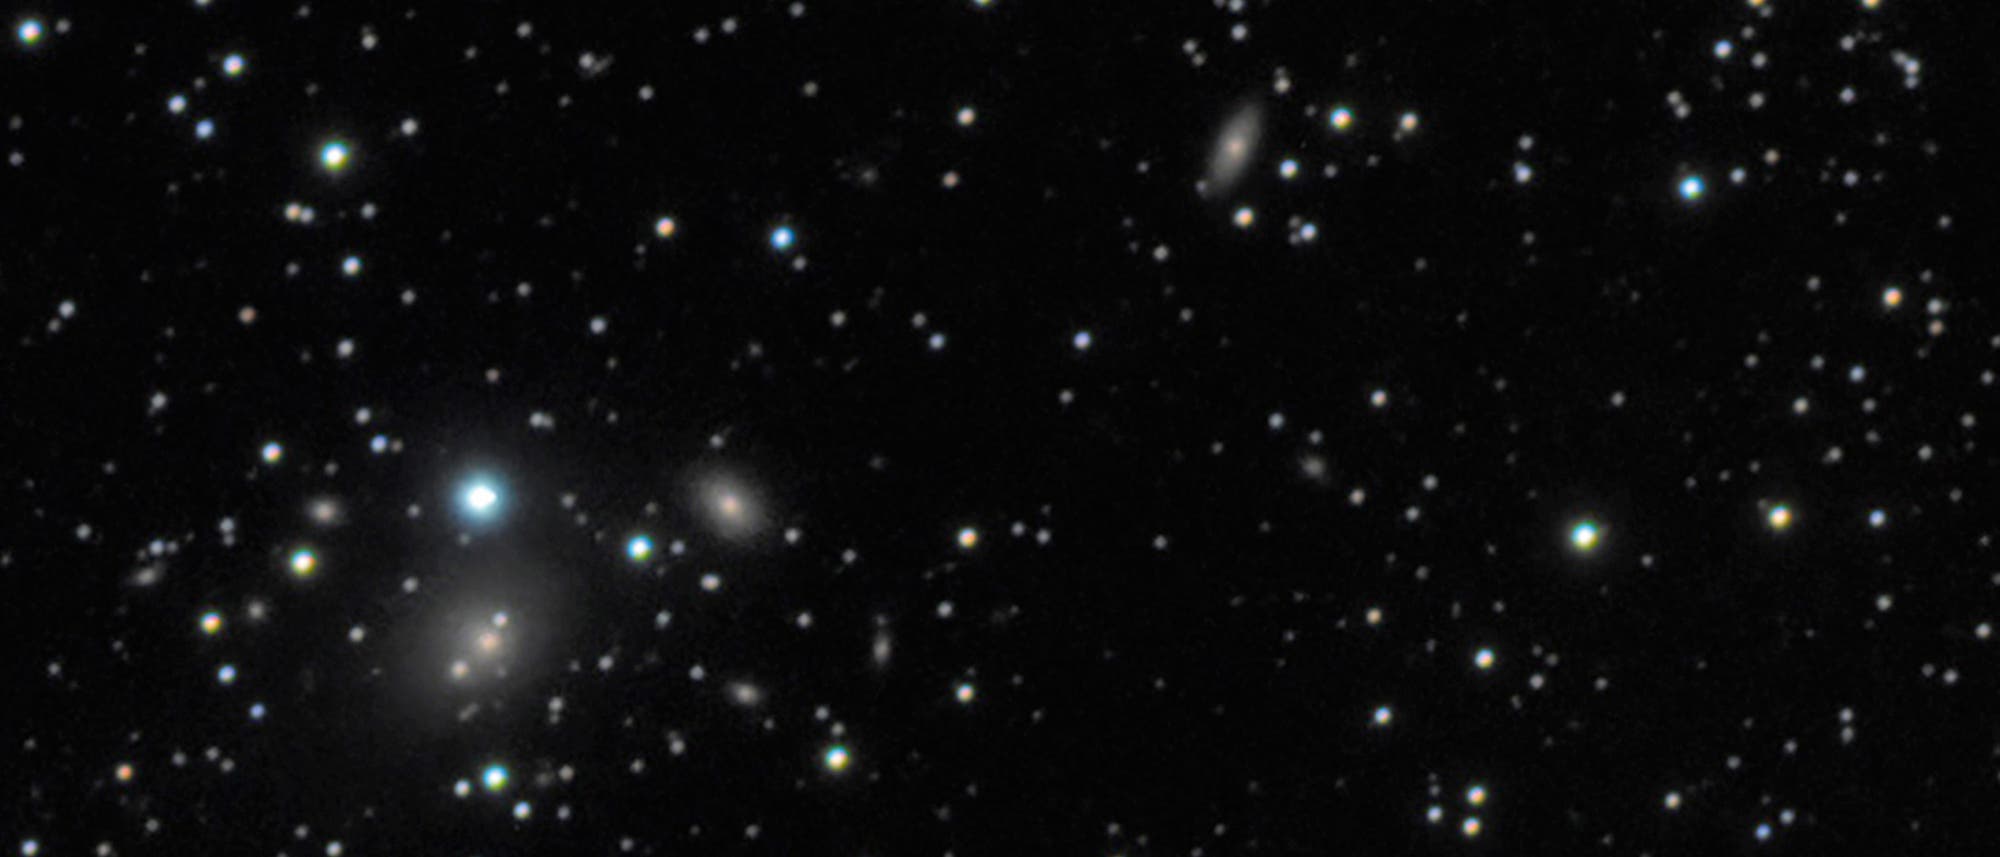 Radiogalaxien erscheinen unspektakulär, doch zeigen sie bei näherer Betrachtung außergewöhnliche Eigenschaften.